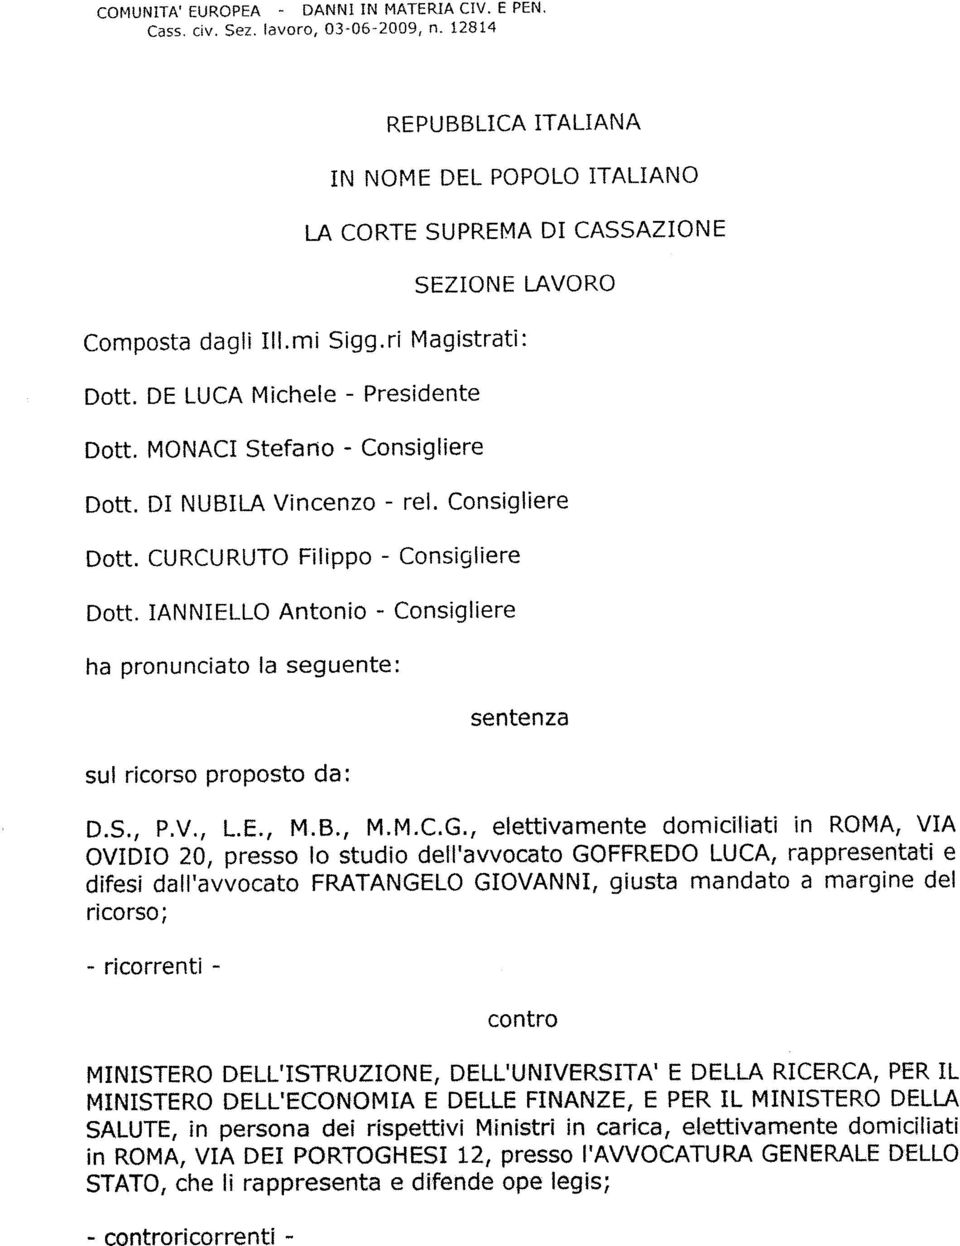 MONACI Stefano - Consigliere Dott. DI NUBILA Vincenzo - rei. Consigliere Dott. CURCURUTO Filippo - Consigliere Dott.